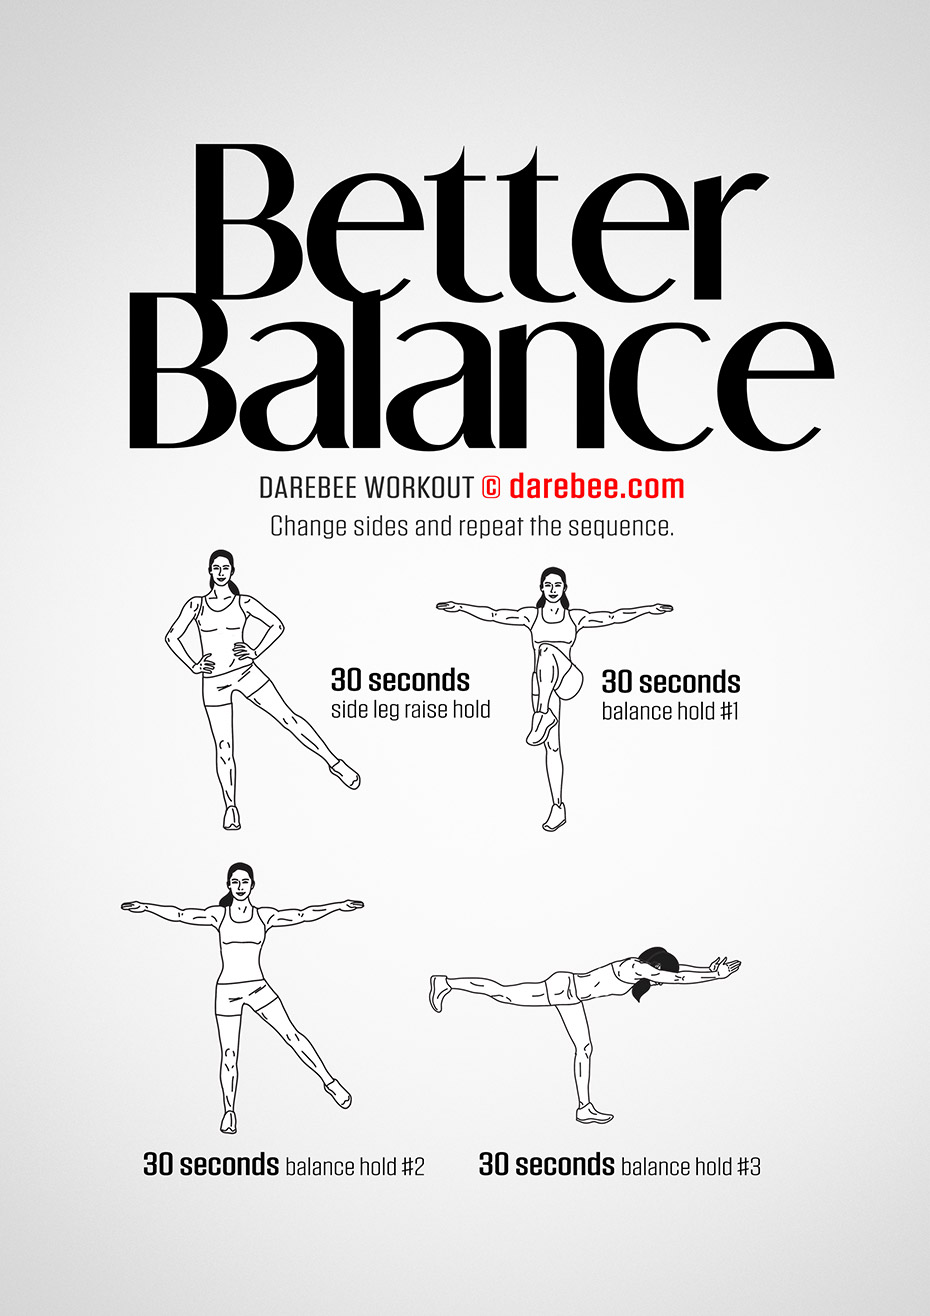 https://darebee.com/images/workouts/better-balance-workout.jpg